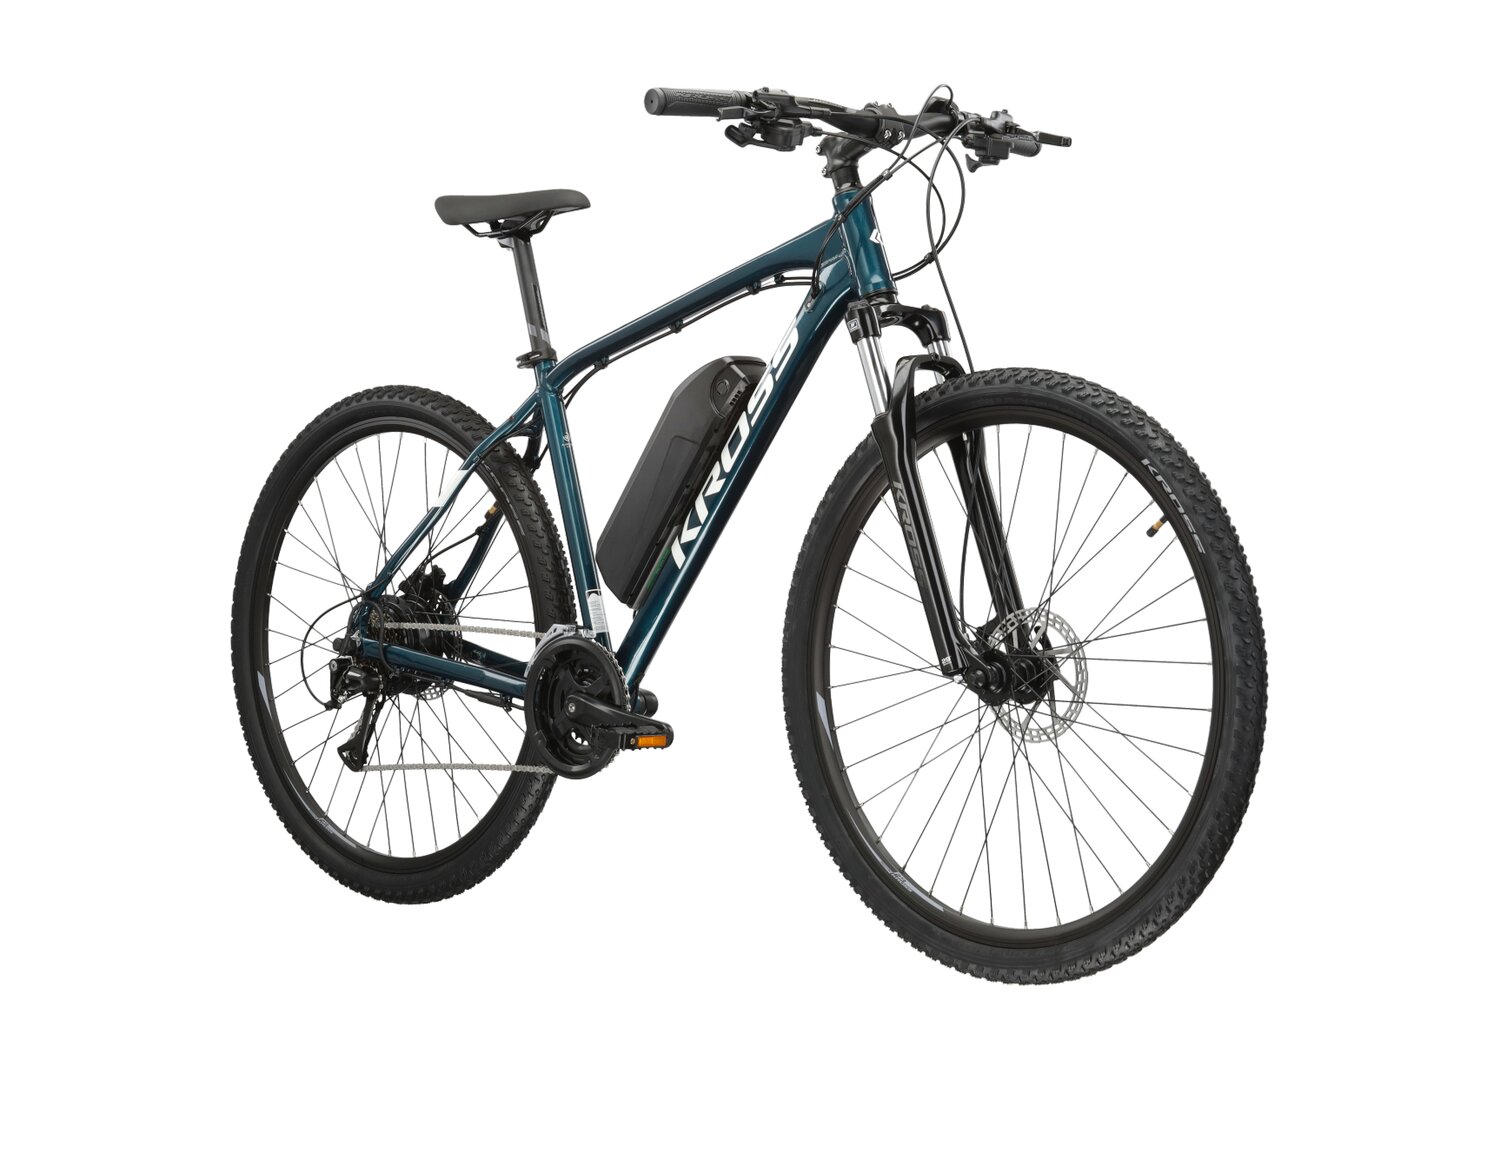 Elektryczny rower górski MTB Kross Hexagon Boost 345 Wh na aluminiowej ramie w kolorze czarnym wyposażony w osprzęt Shimano i napęd elektryczny